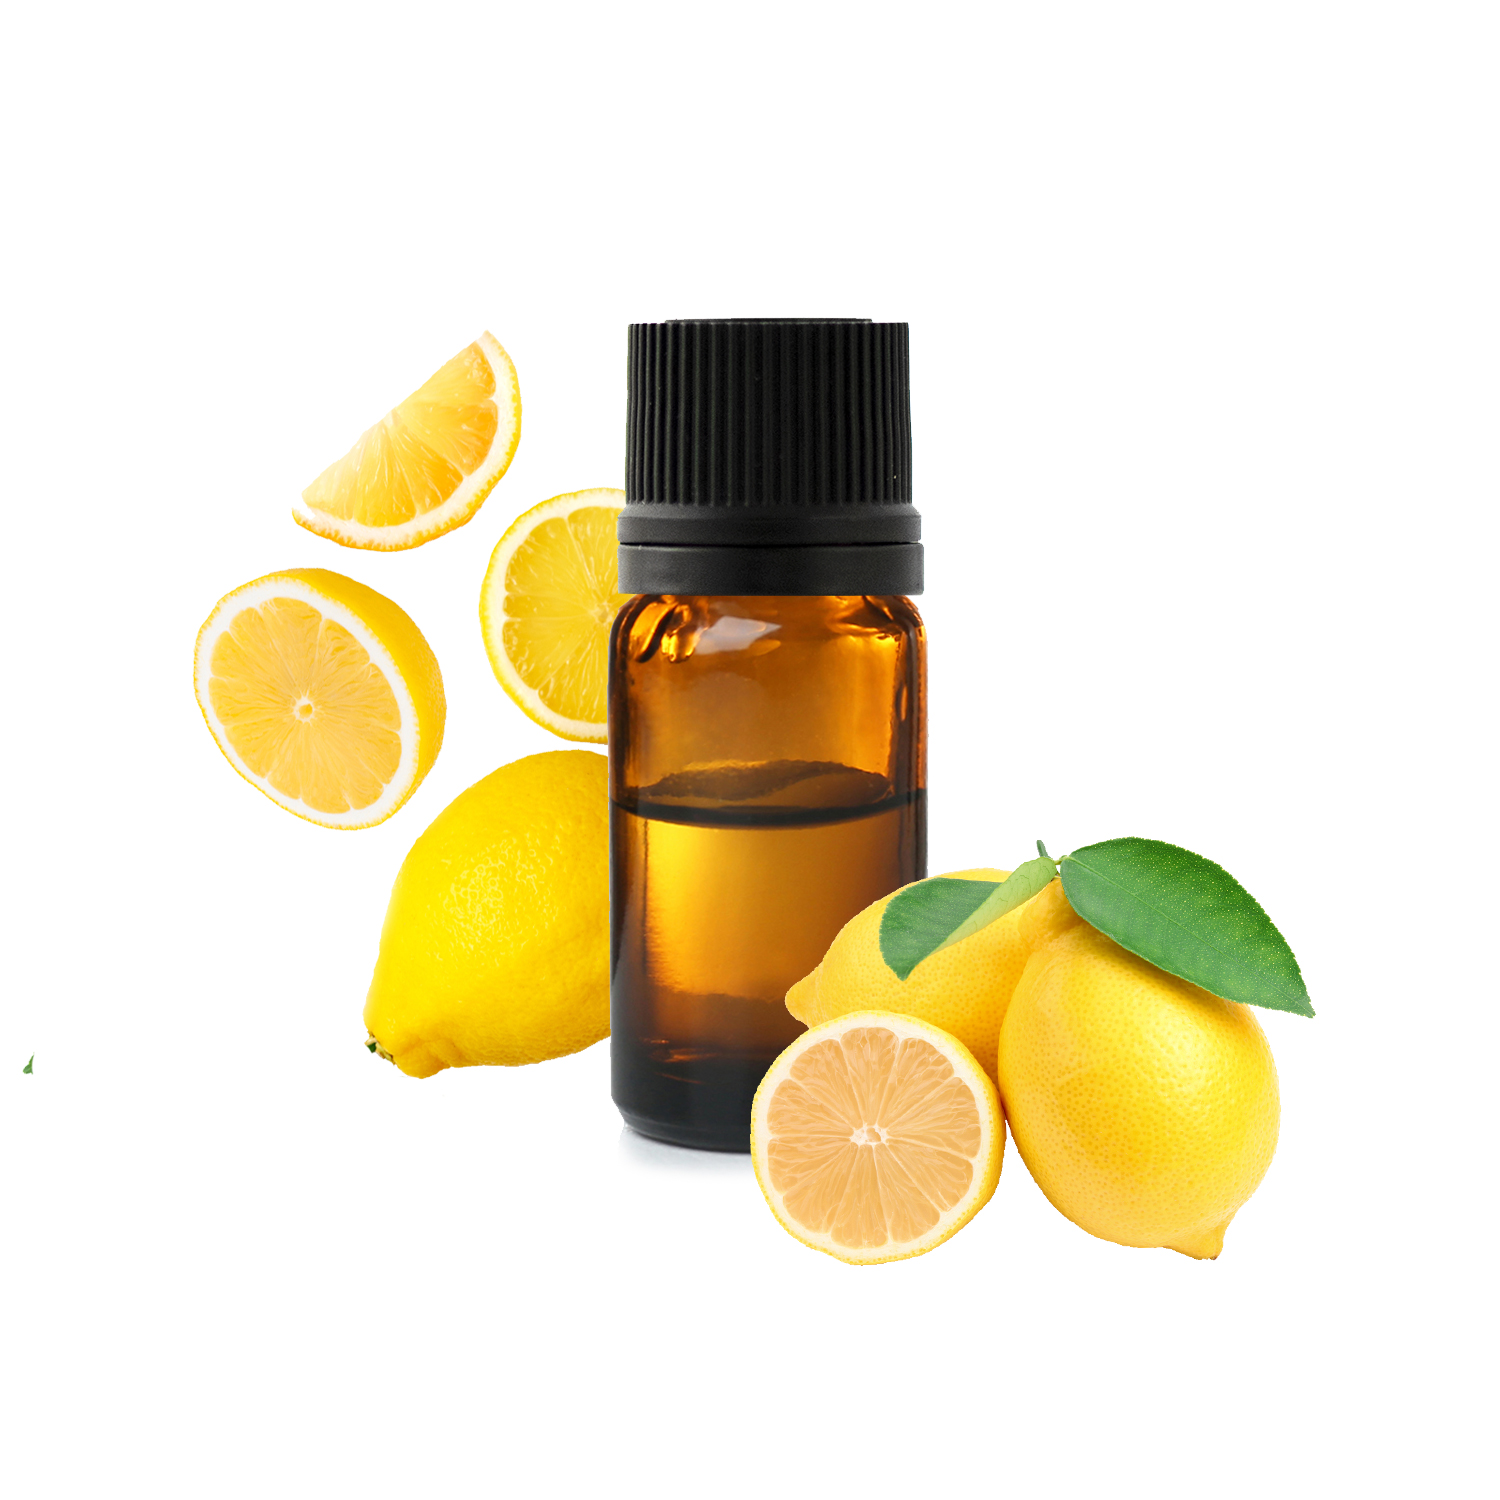 Le citron : propriétés et bienfaits santé